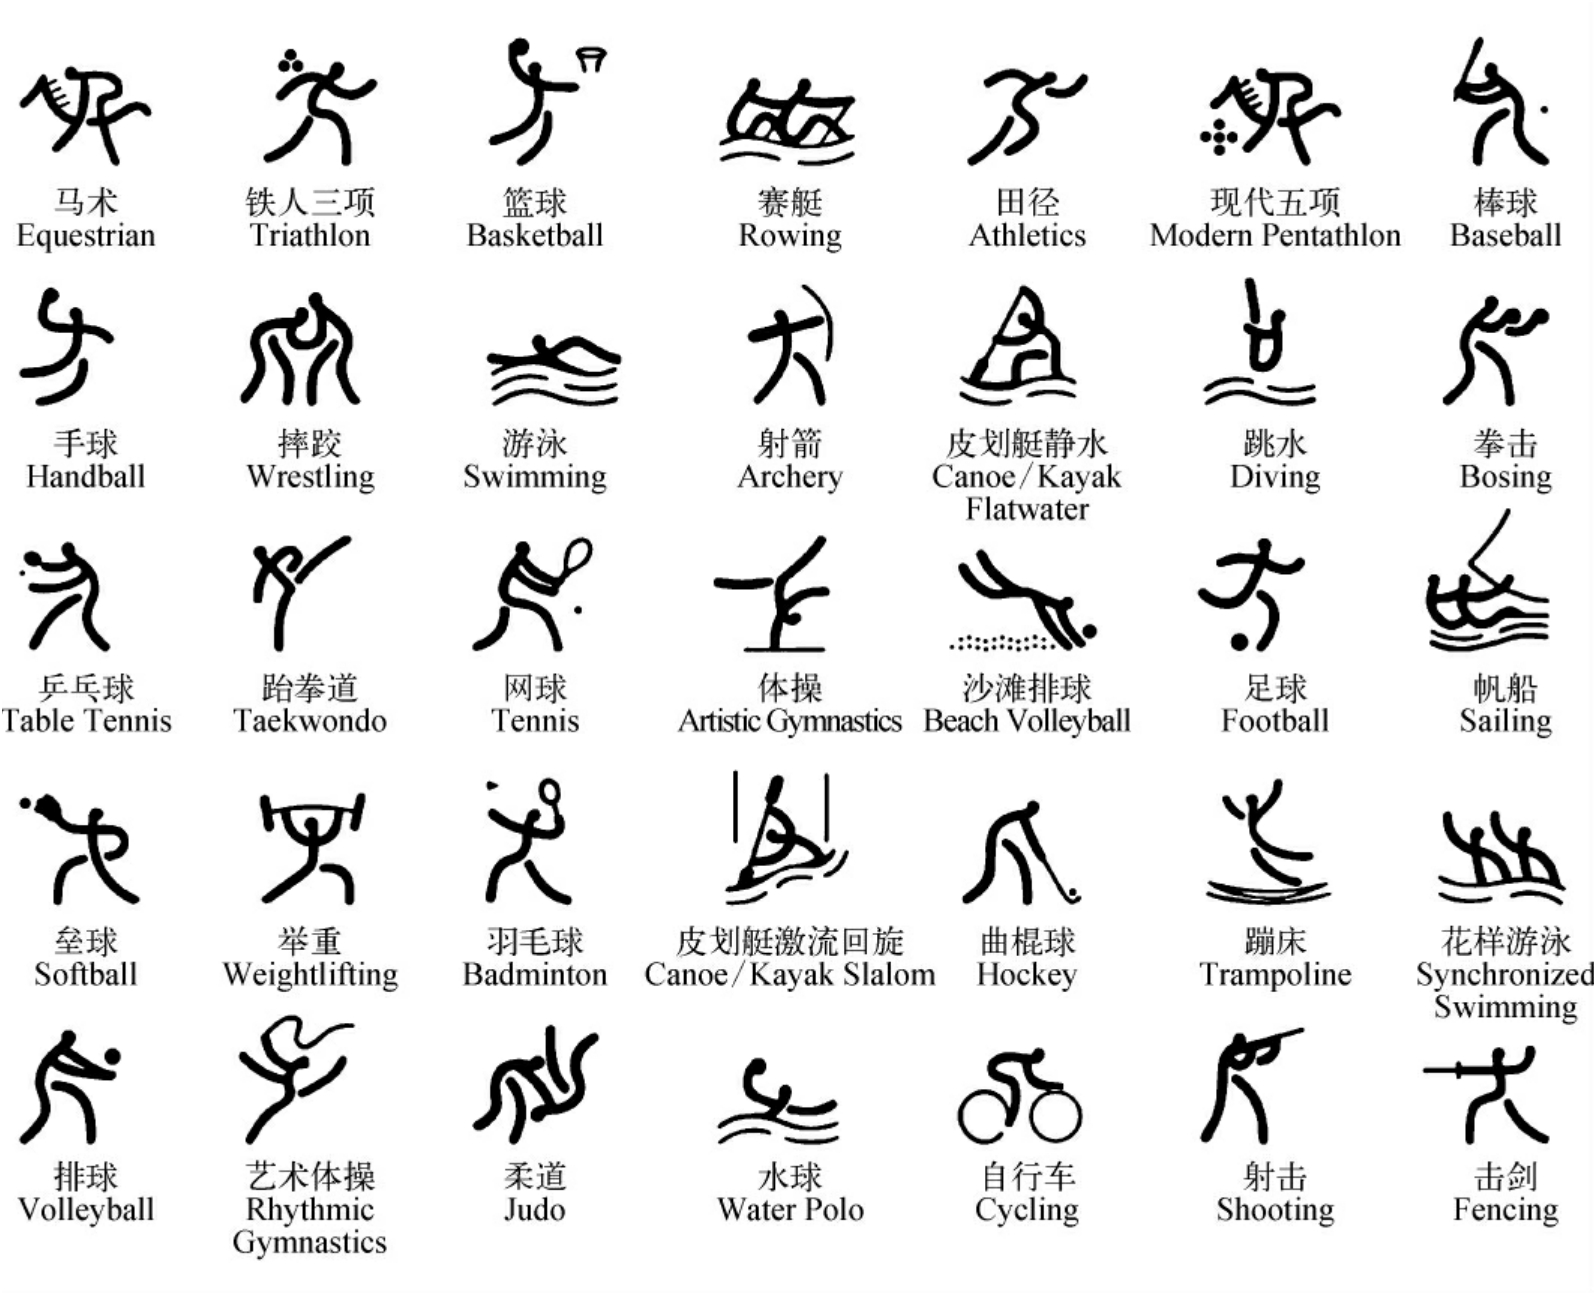 另一类受人欢迎的通用图形标识是奥运会的各项体育运动项目标志.